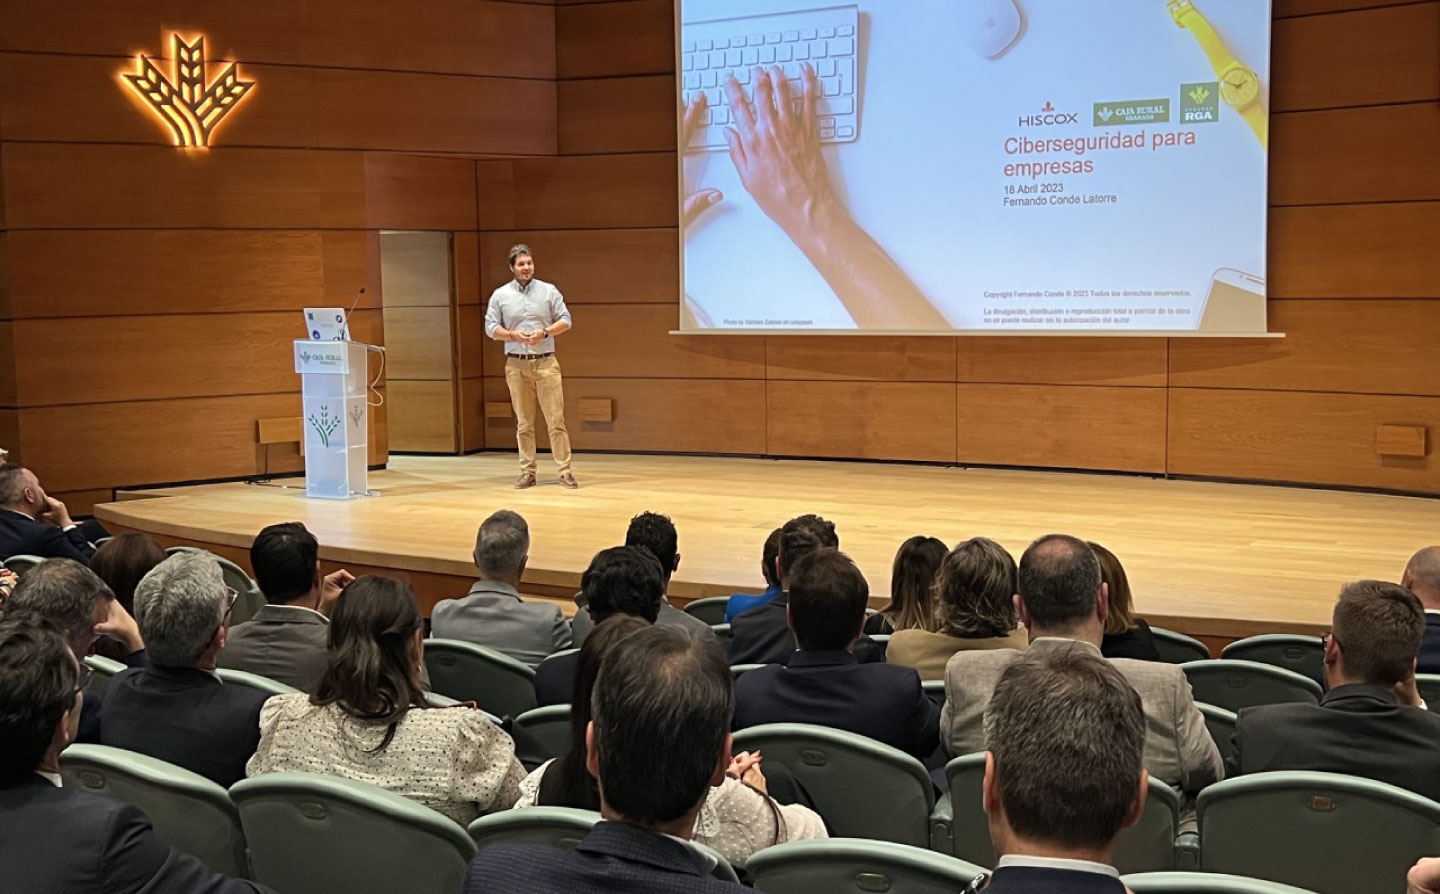 Fernando Conde durante su intervención en la Jornada sobre Ciberseguridad en el auditorio Caja Rural Granada